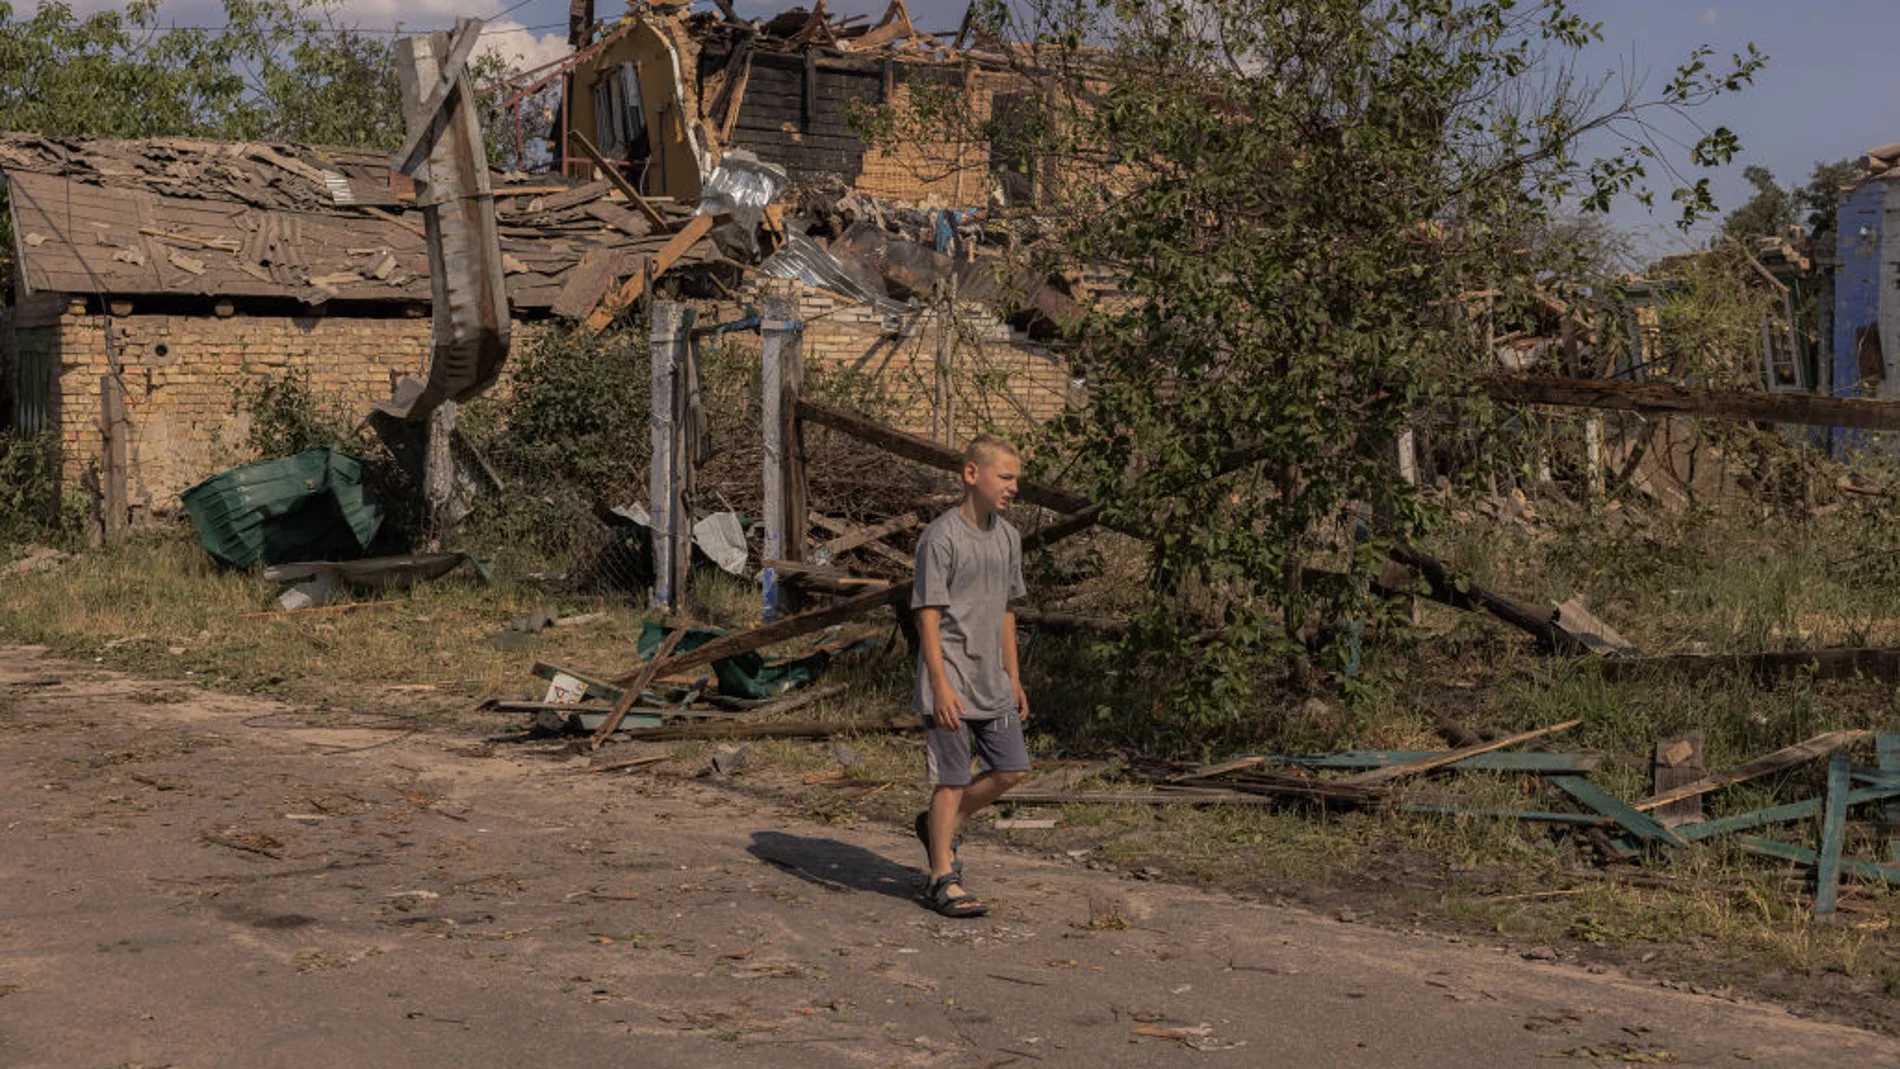 Un niño camina solo junto a los restos de casas bombardeadas en Ucrania